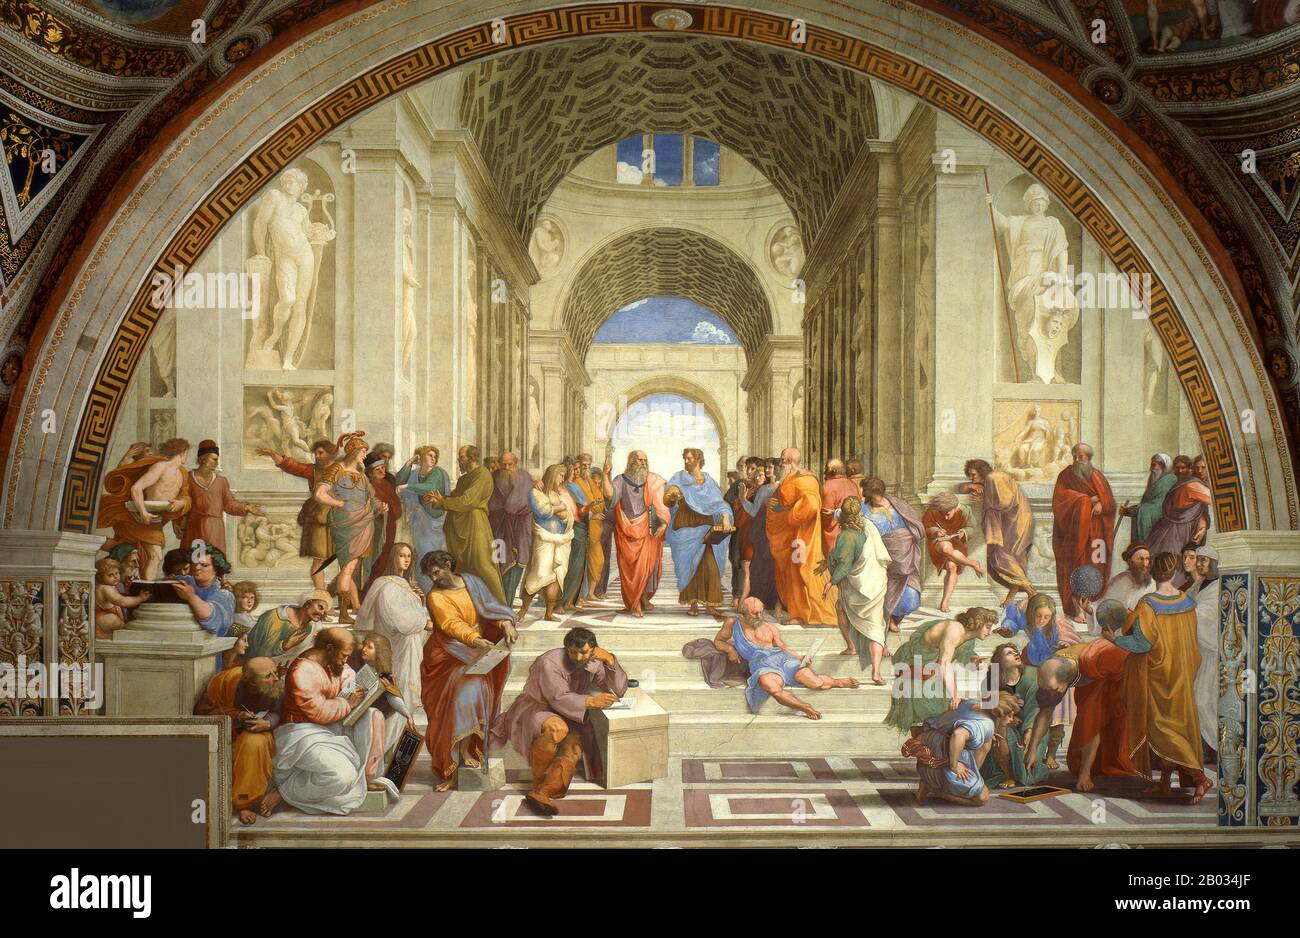 La Scuola di Atene, o Scuola di Atene in italiano, è uno dei più famosi affreschi dell'artista rinascimentale italiano Raffaello. Fu dipinto tra il 1509 e il 1511 come parte della commissione di Raffaello per decorare con affreschi le sale ora conosciute come le Stanze di Raffaello, nel Palazzo Apostolico in Vaticano. La stanza della Segnatura fu la prima delle stanze da decorare, e la seconda pittura da finire, dopo la Disputa, sulla parete opposta. L'immagine è stata vista da tempo come il capolavoro di Raffaello e la perfetta forma di realizzazione del classico Foto Stock